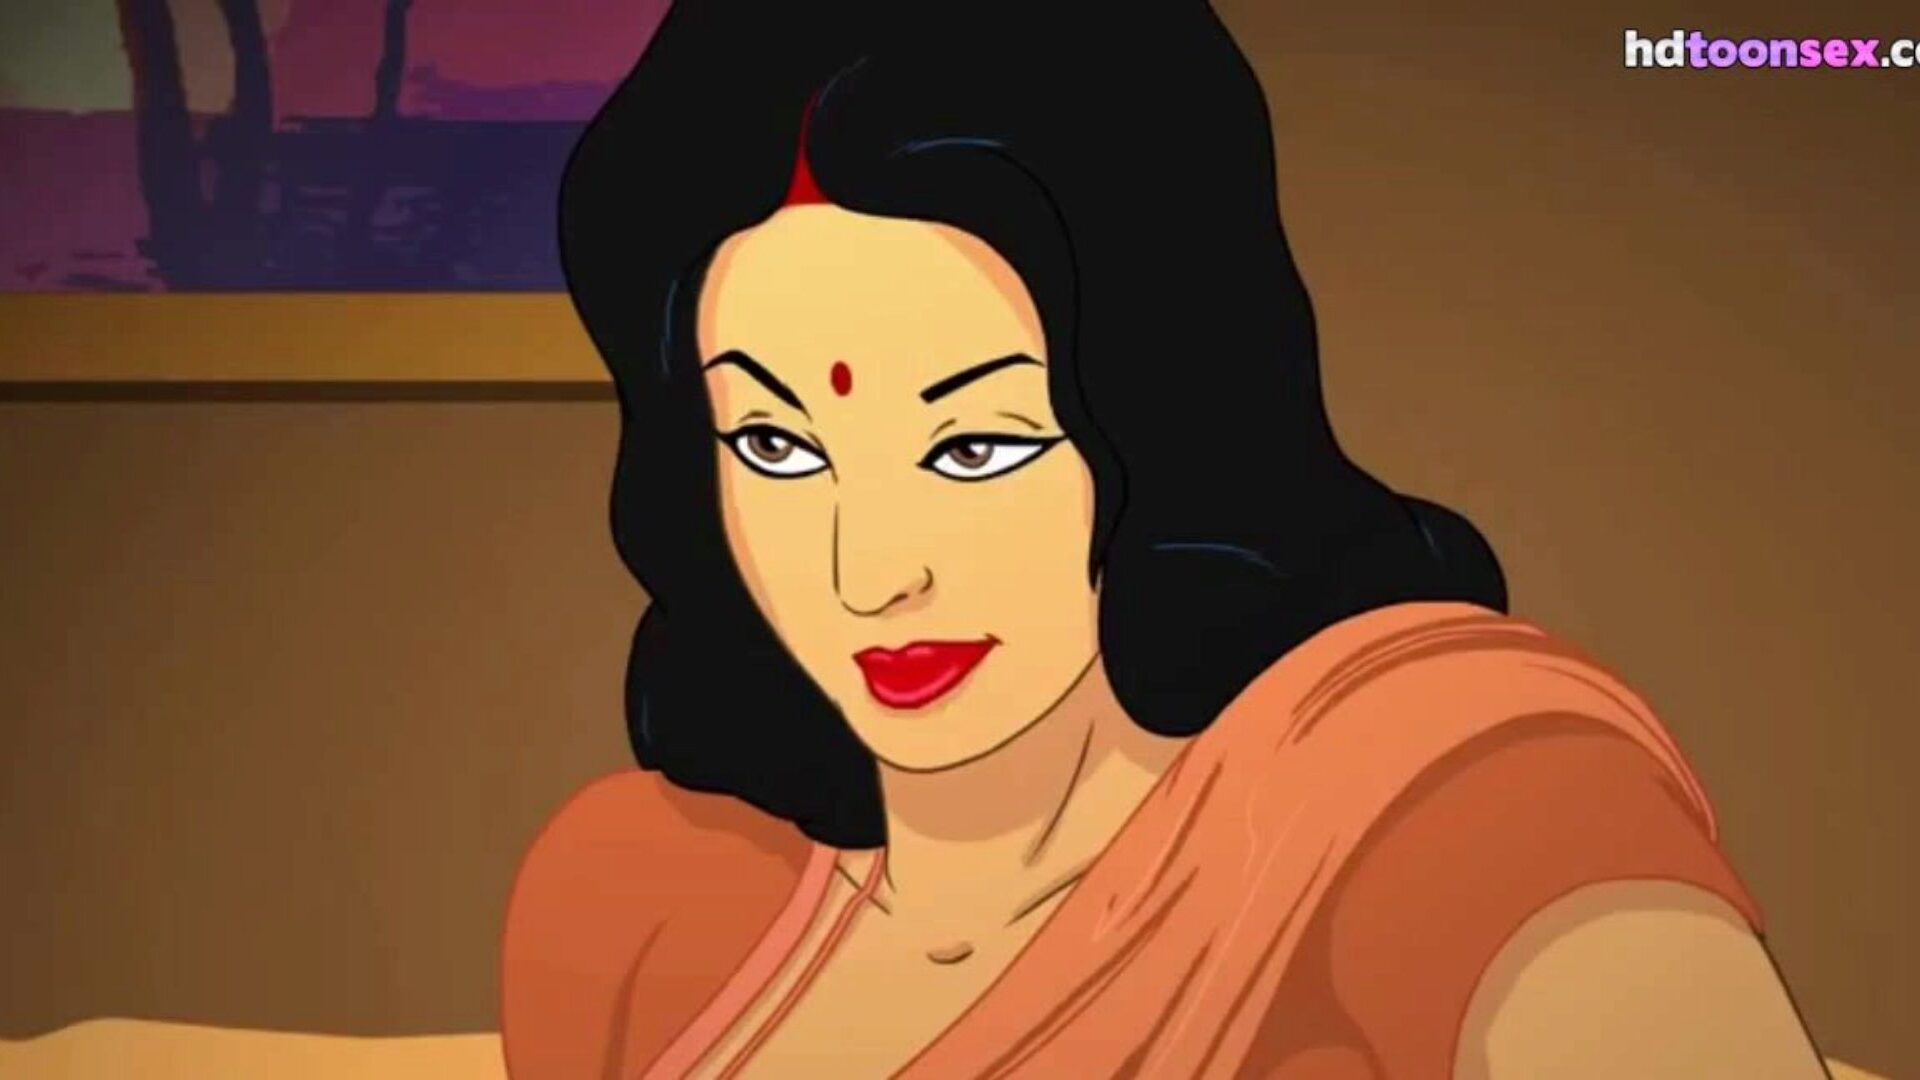 маратхи индийский сексуальный мать мультяшек анимация